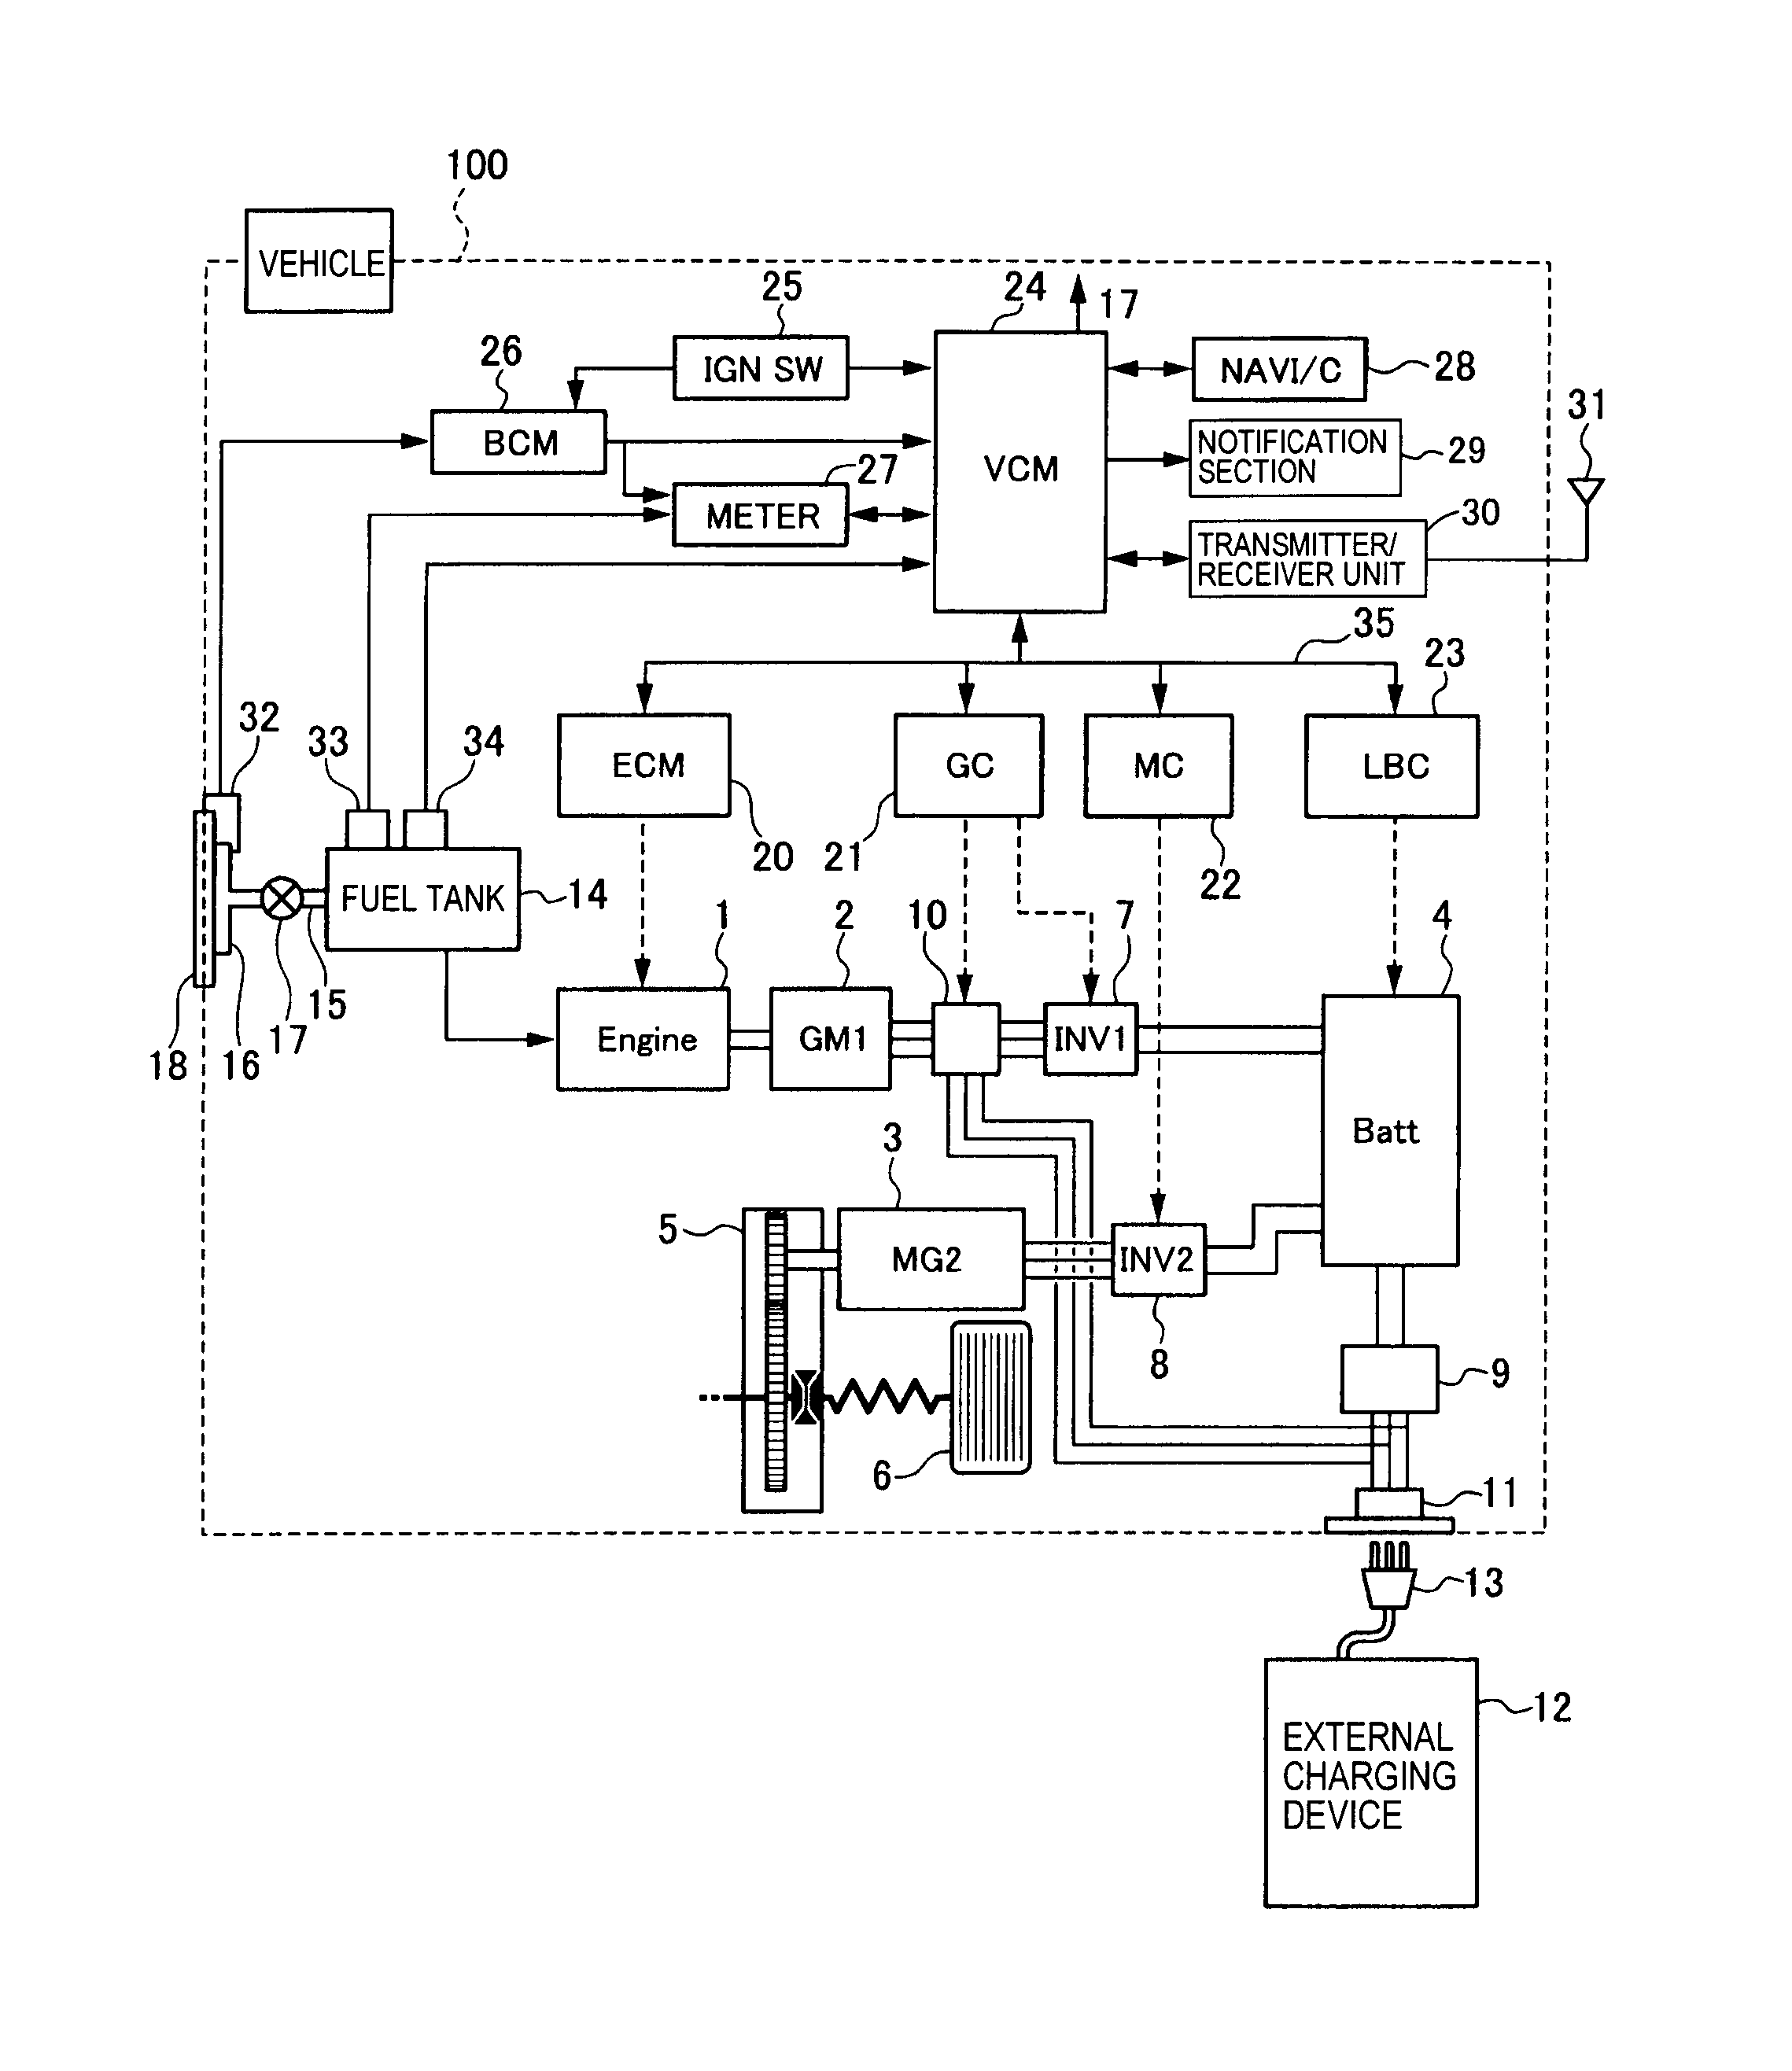 vog260-t4 wiring diagram